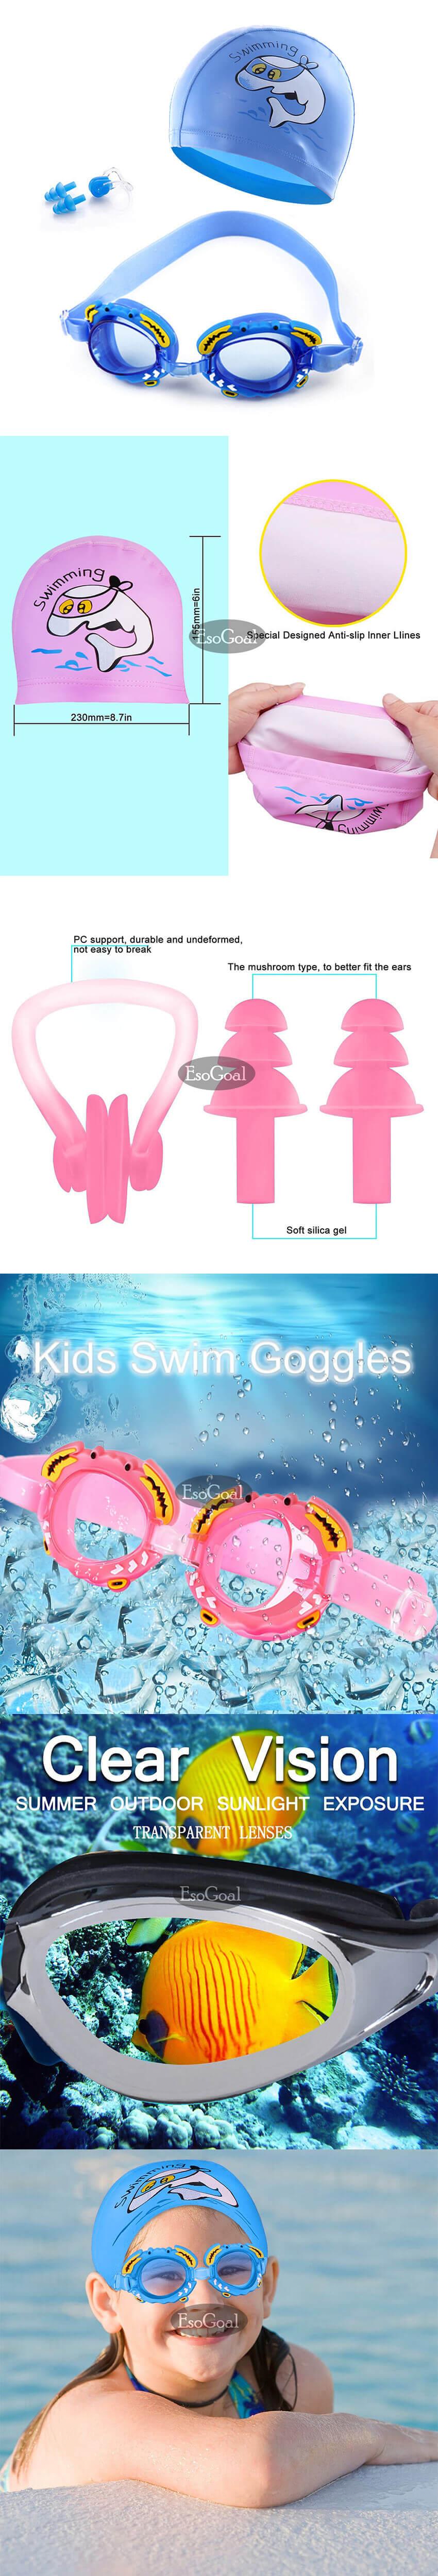 ลองดูภาพสินค้า ชุดแว่นตาว่ายน้ำเด็ก ชุดเด็กชาย และเด็กหญิง แว่นตา อุปกรณ์ว่ายน้ำเด็ก ป้องกันหมอก แว่นตาว่ายน้ำ กันน้ำ หมวกว่ายน้ำ